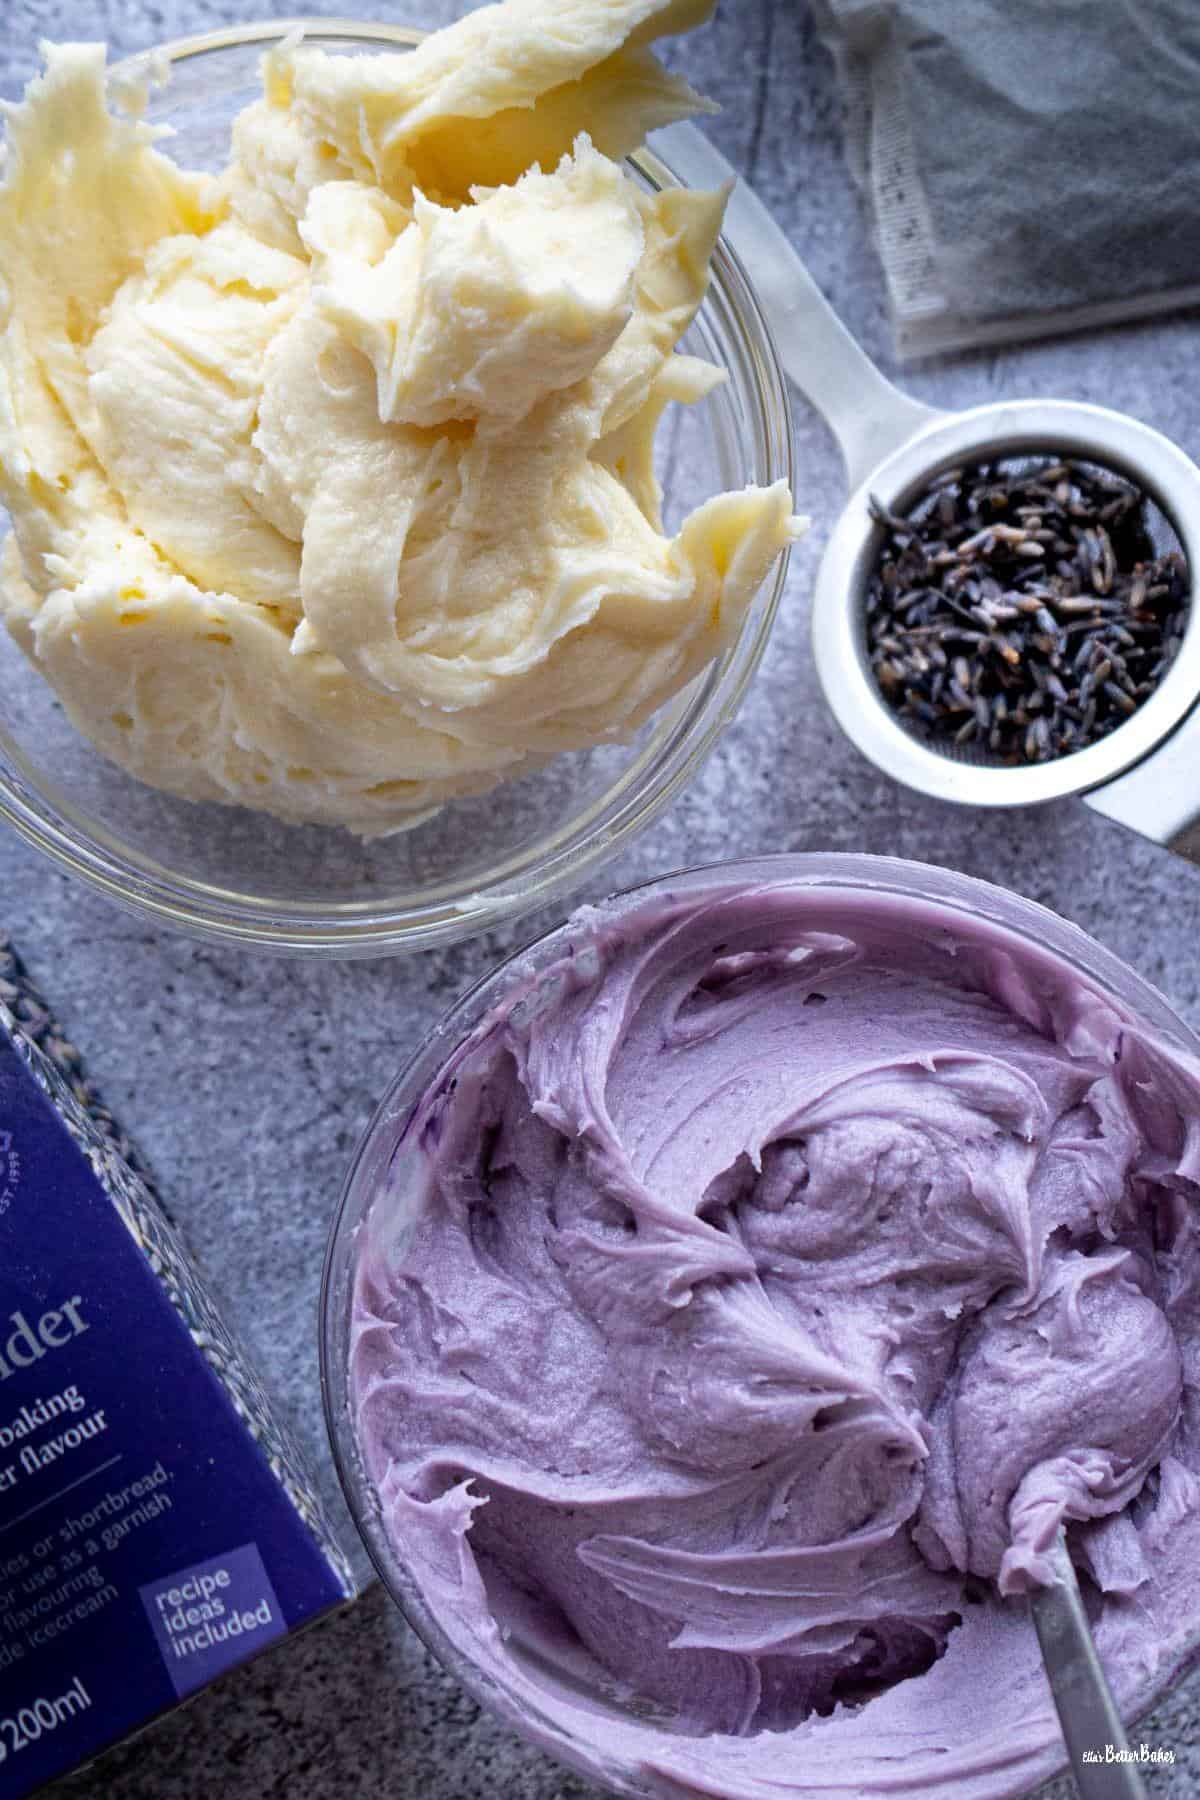 cream and lavender coloured buttercream